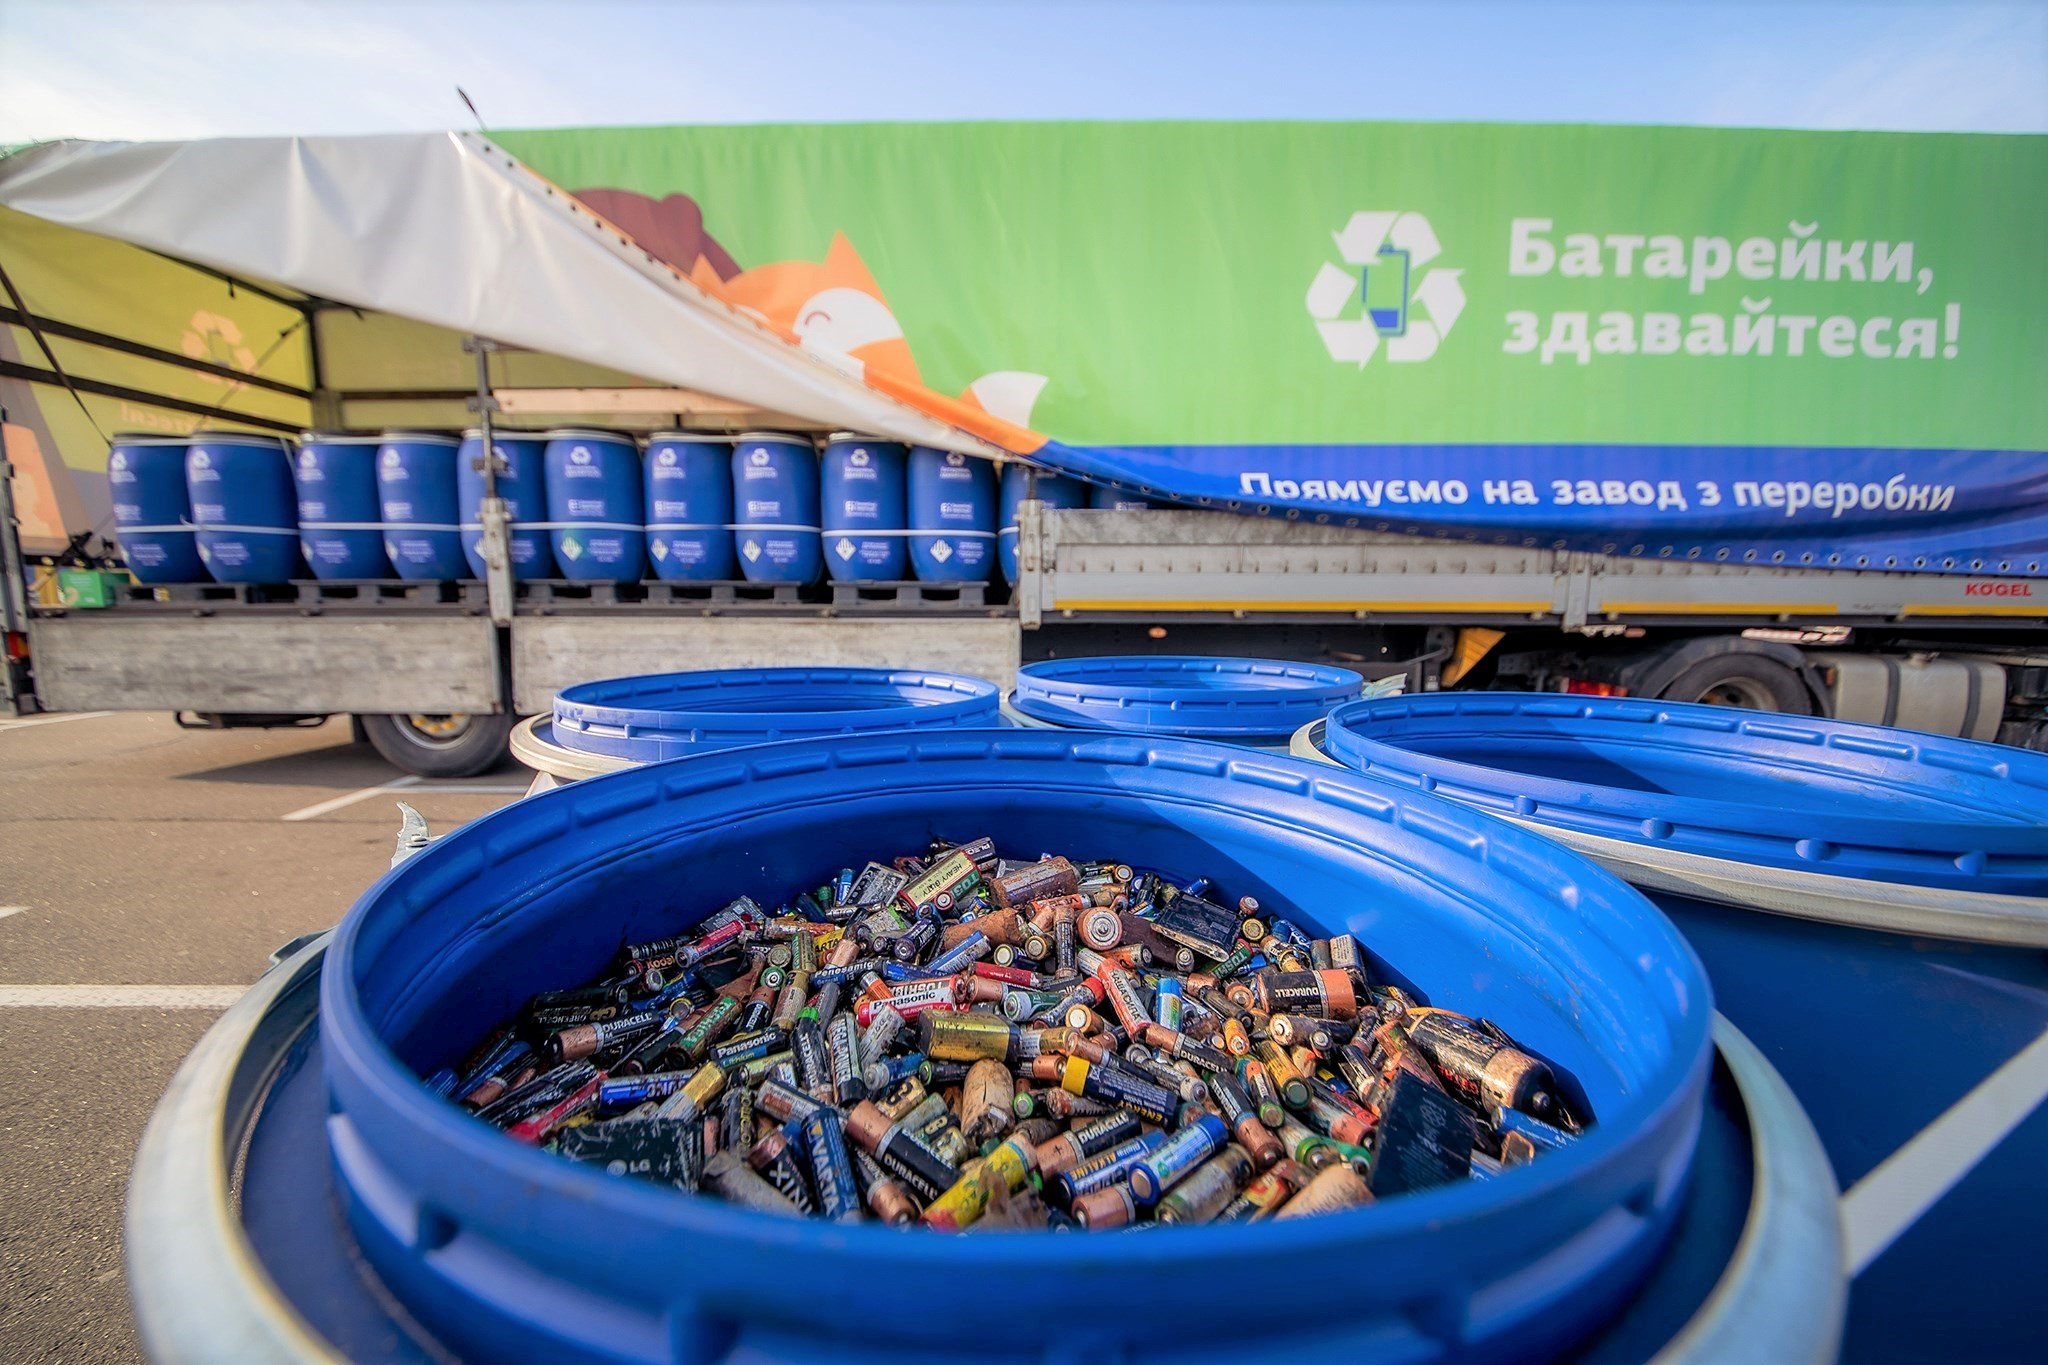 Первые 20 тонн батареек отправились на переработку из Киева в Румынию (фото)